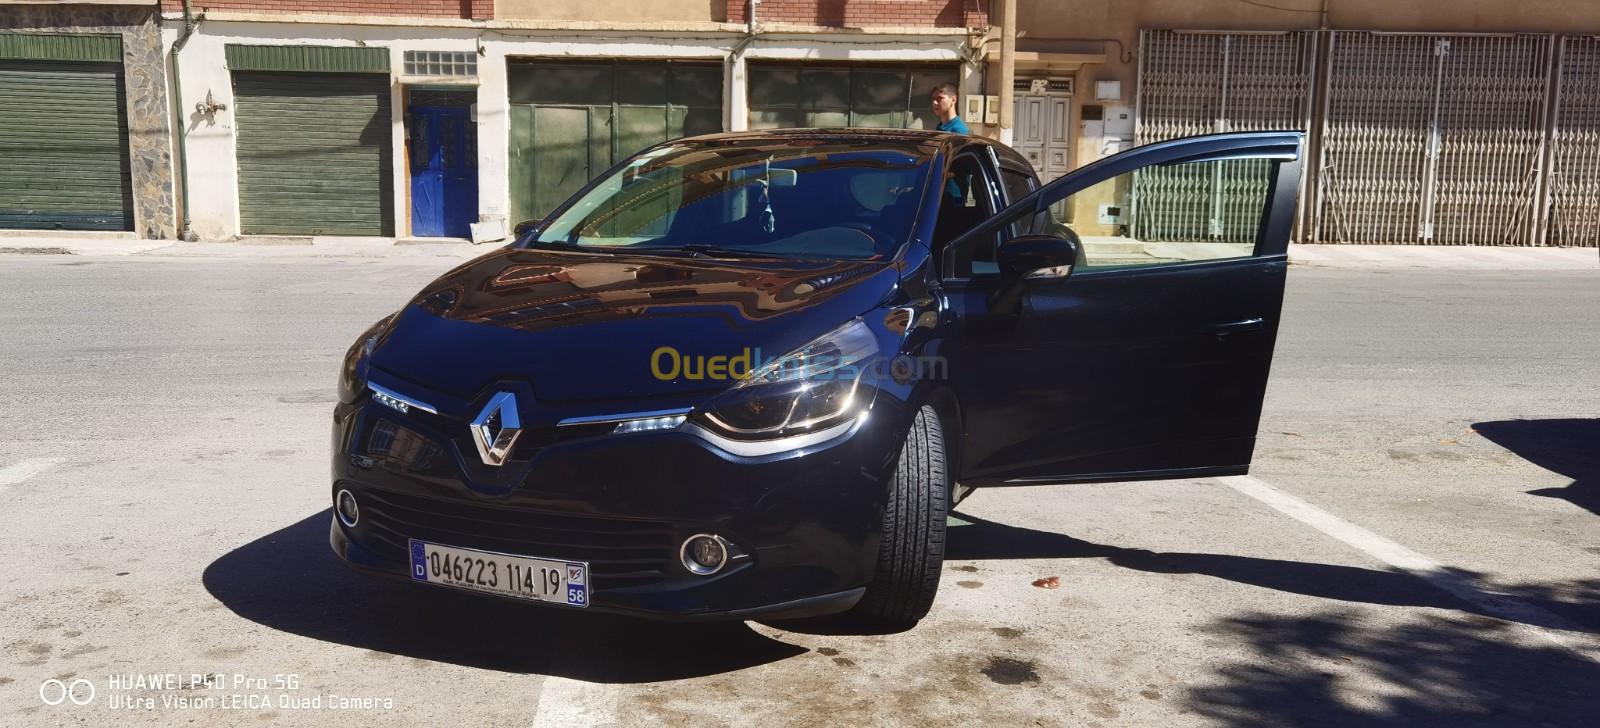 Renault Clio 4 2014 Dynamique